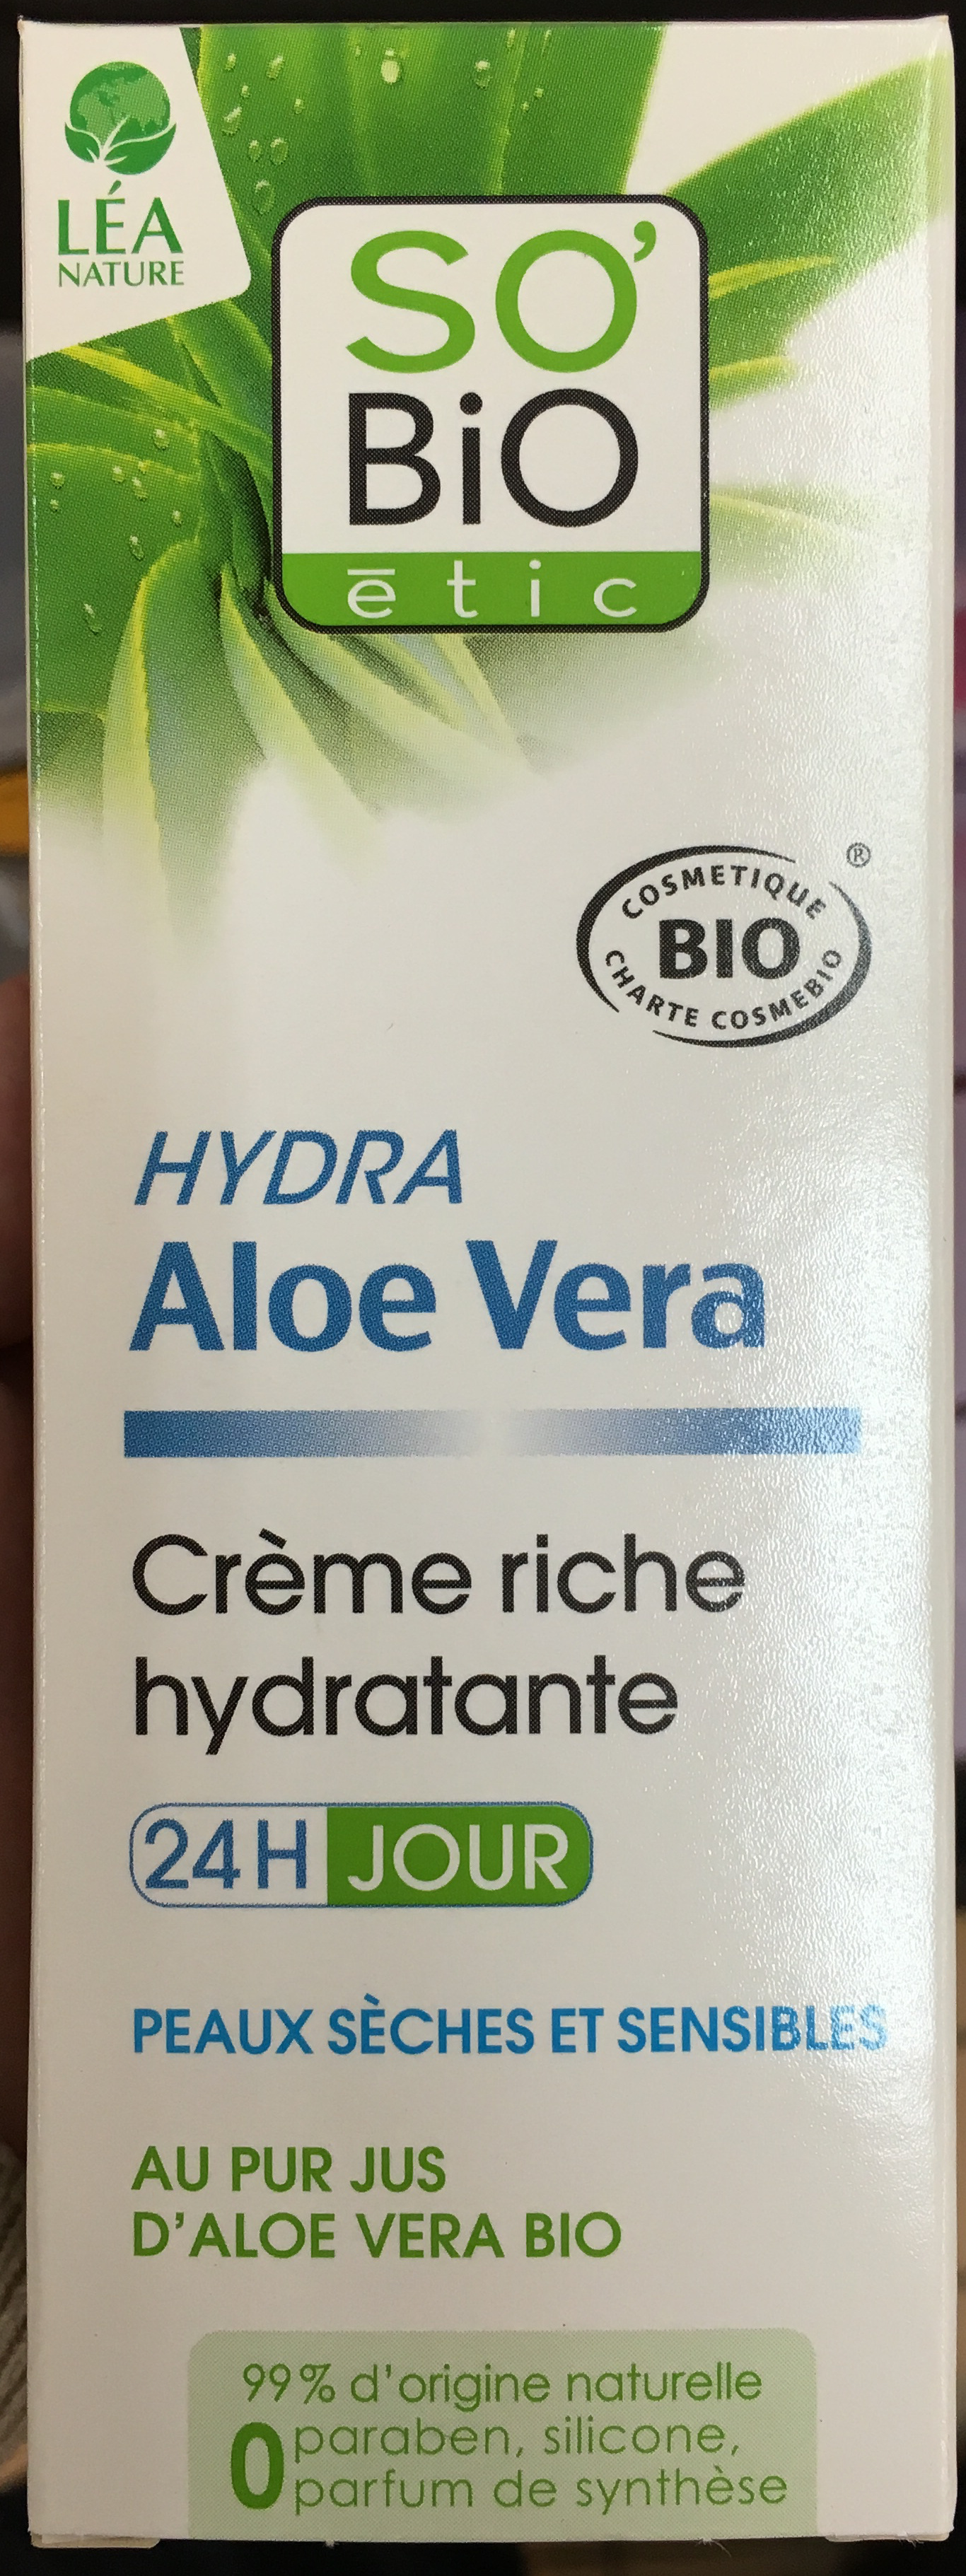 Hydra Aloe Vera Crème riche hydratante - Produto - fr